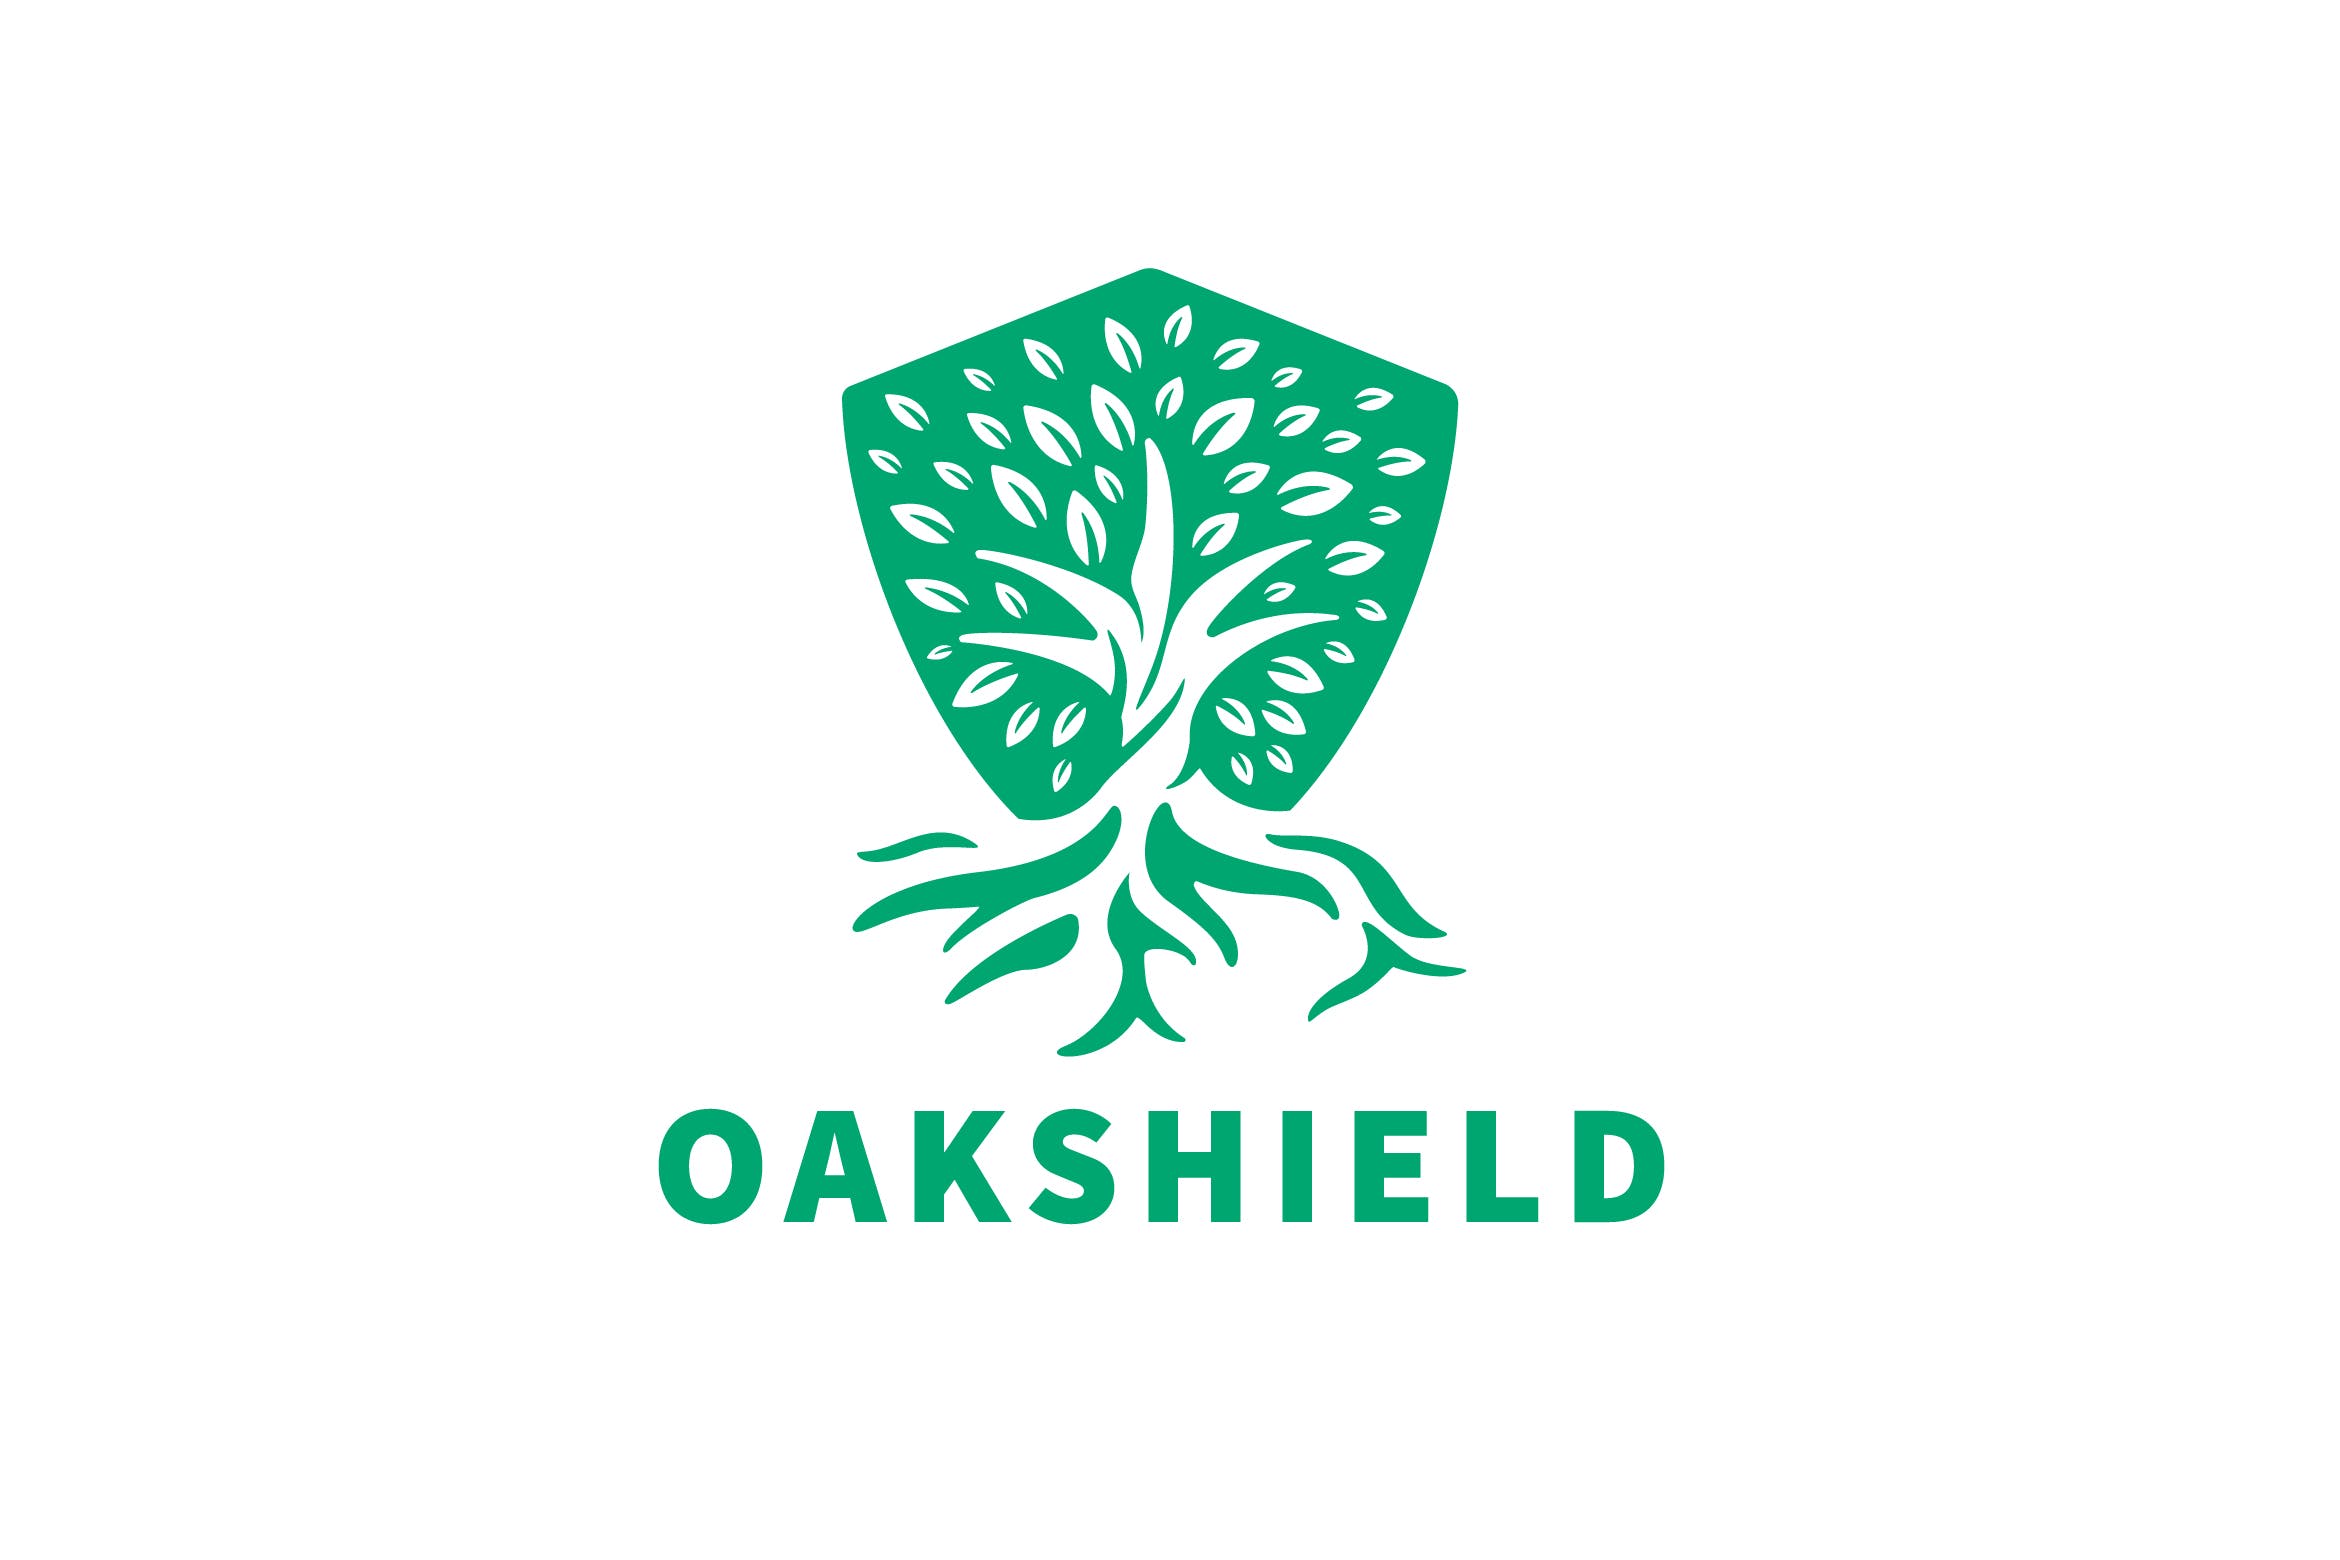 负空间设计风格橡木盾几何图形Logo设计素材中国精选模板 Oak Shield Negative Space Logo插图